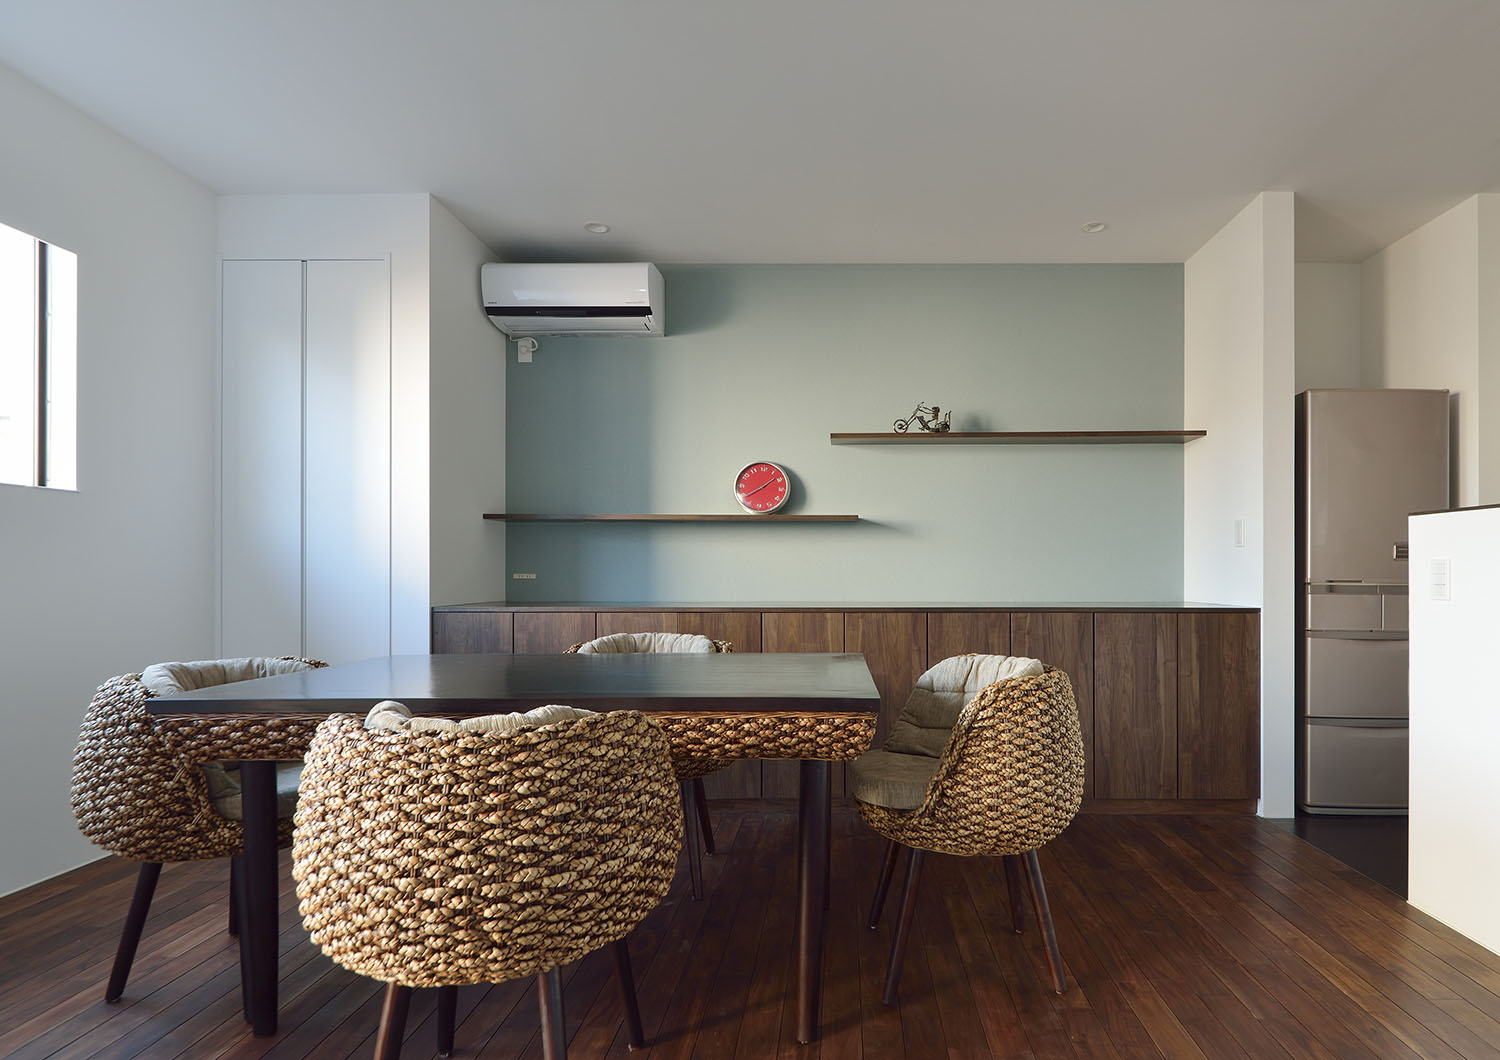 ダイニングテーブルと椅子のデザインが統一されているLDK・デザイン住宅